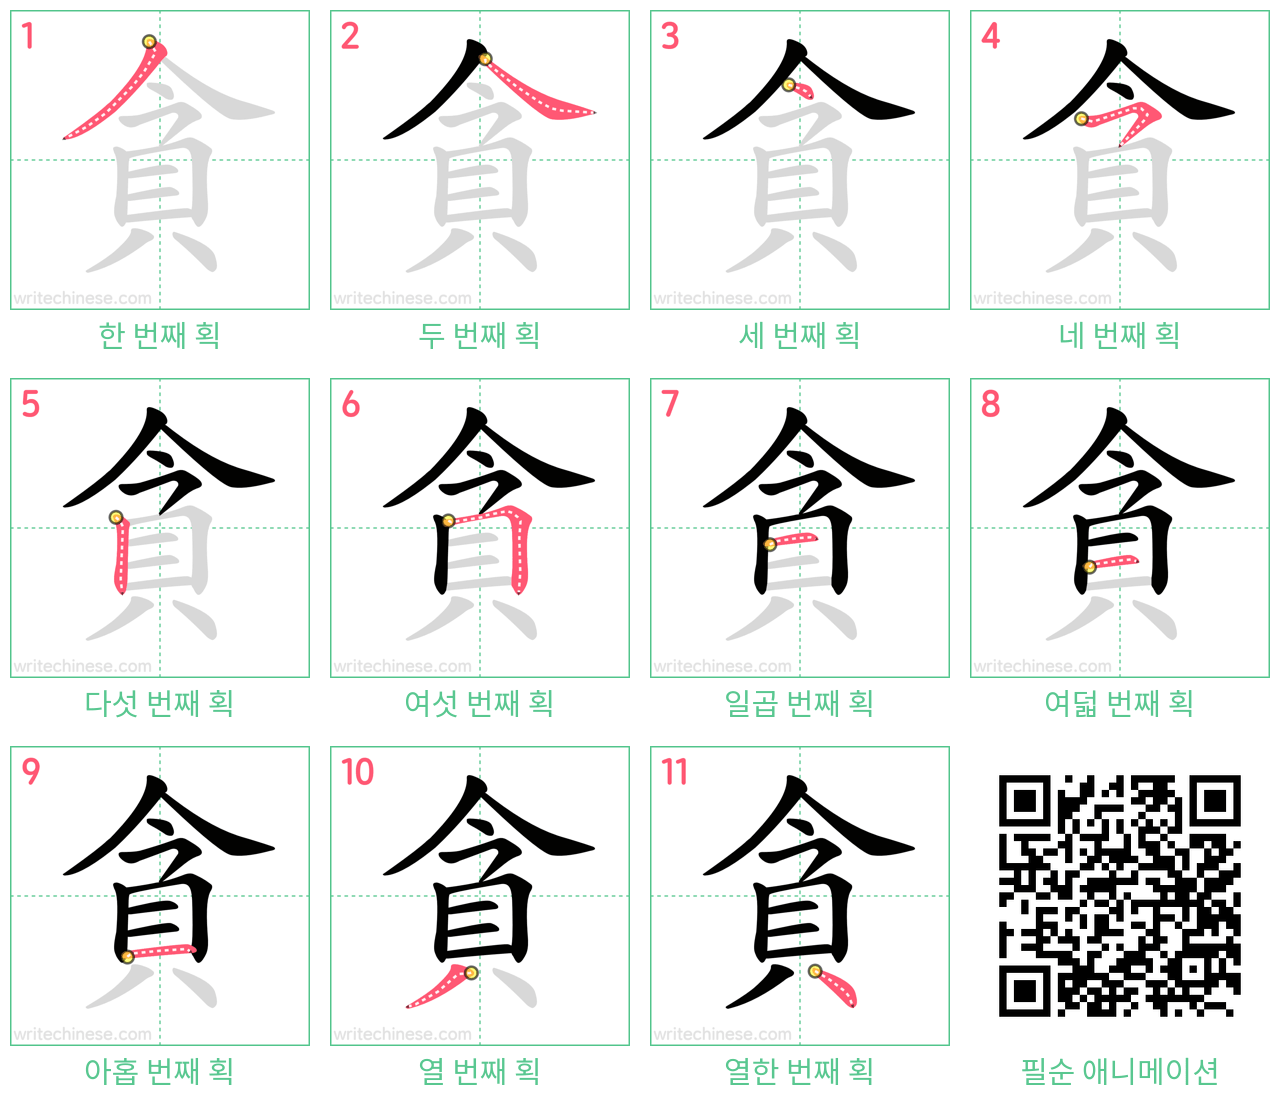 貪 step-by-step stroke order diagrams